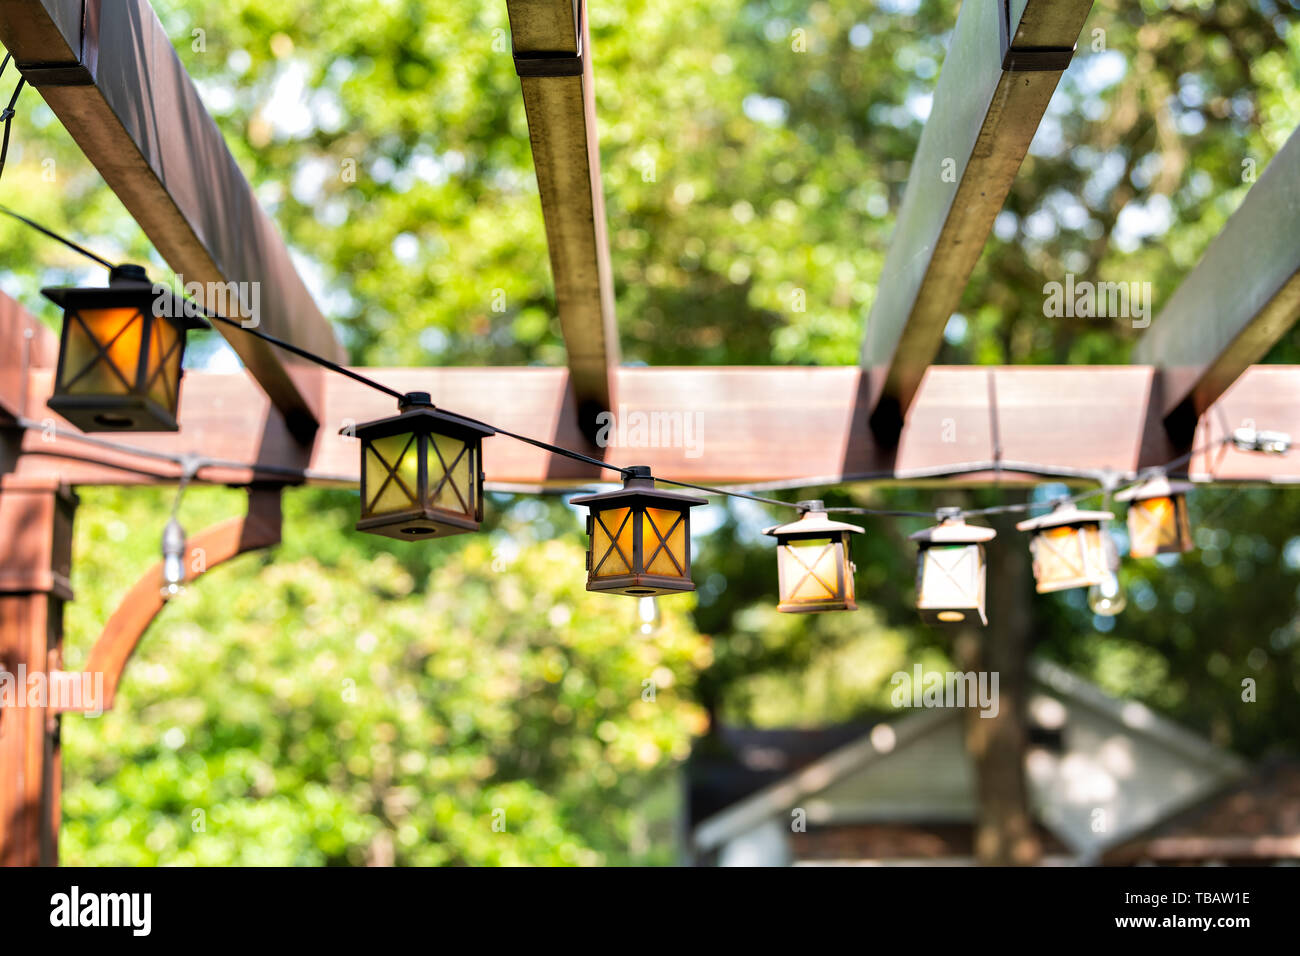 Nahaufnahme der Terrasse im Frühling Garten im Hinterhof des Hauses mit Laterne Lampen leuchten hängen von Pergola Vordach Pavillon aus Holz und Pflanzen Stockfoto